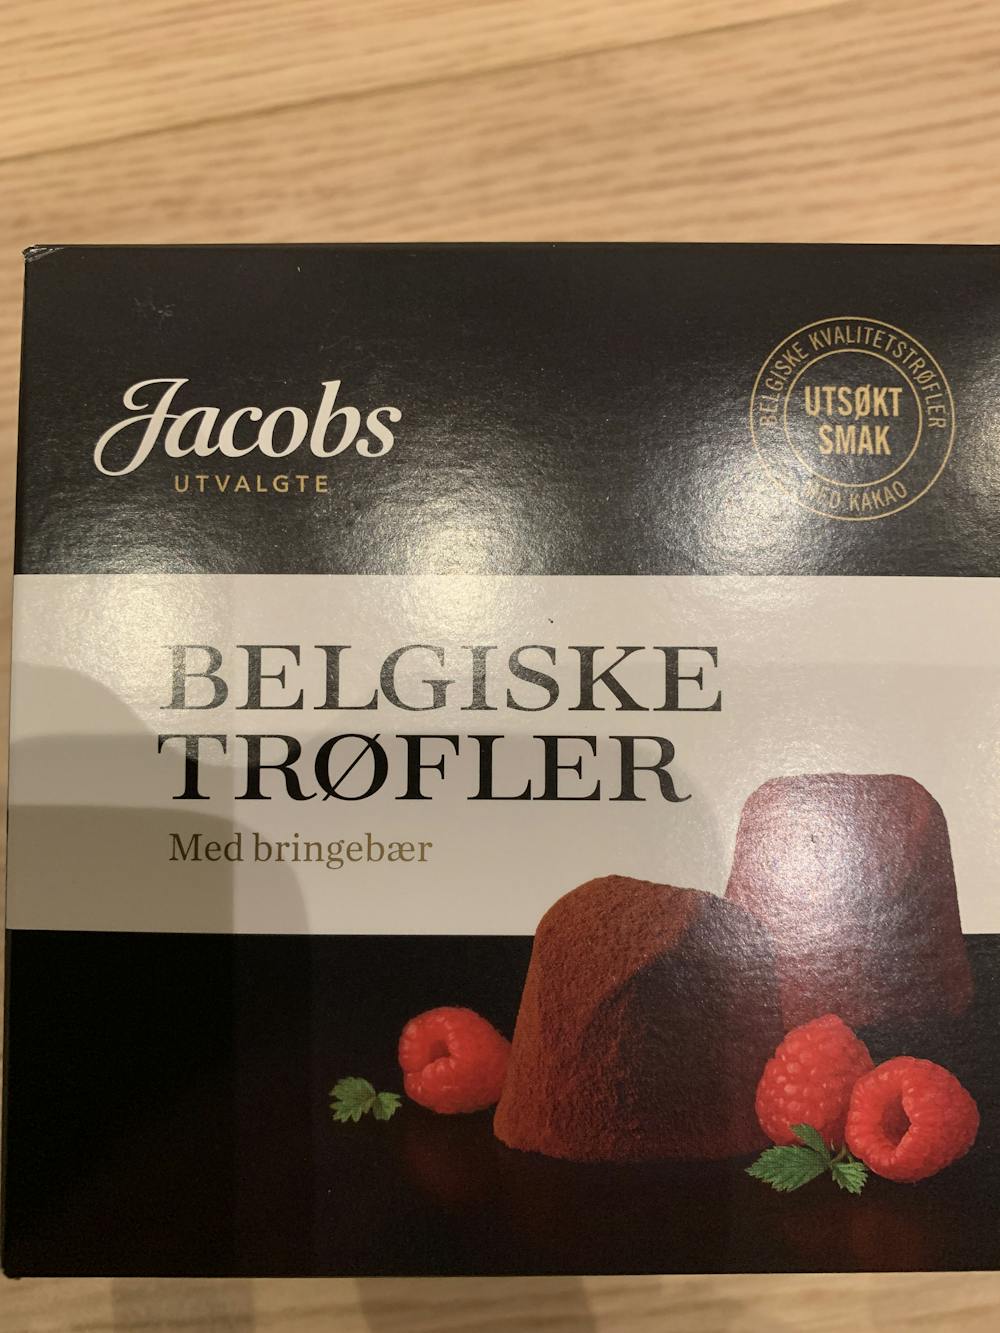 Belgiske trøfler med bringebær, Jacobs utvalgte